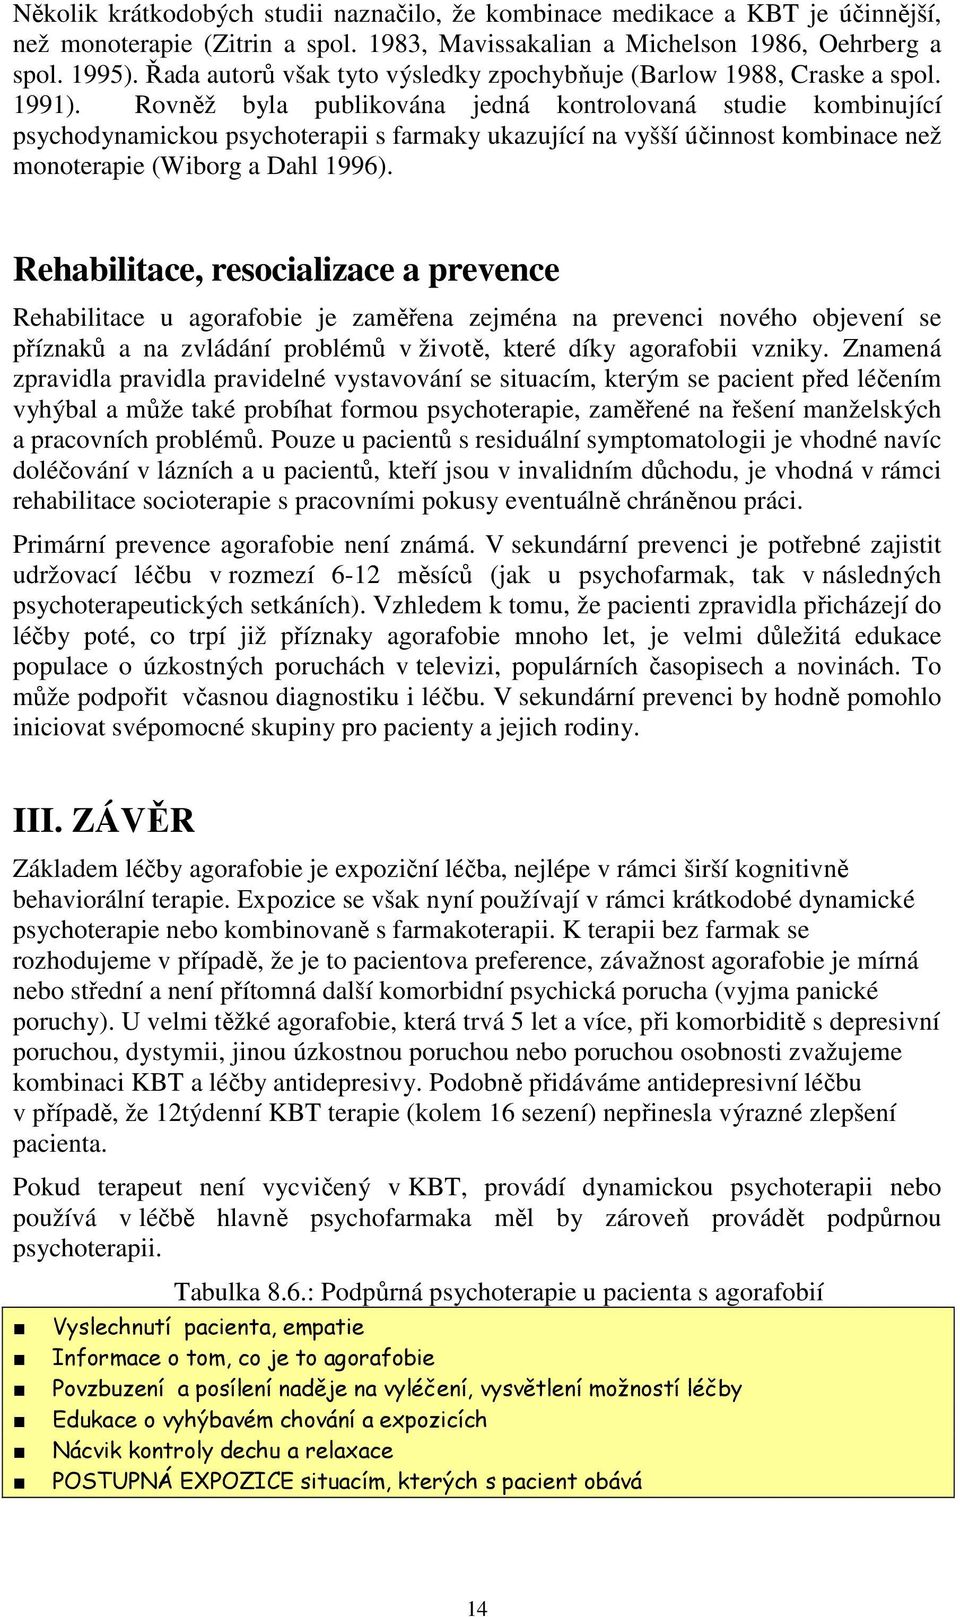 Rovněž byla publikována jedná kontrolovaná studie kombinující psychodynamickou psychoterapii s farmaky ukazující na vyšší účinnost kombinace než monoterapie (Wiborg a Dahl 1996).